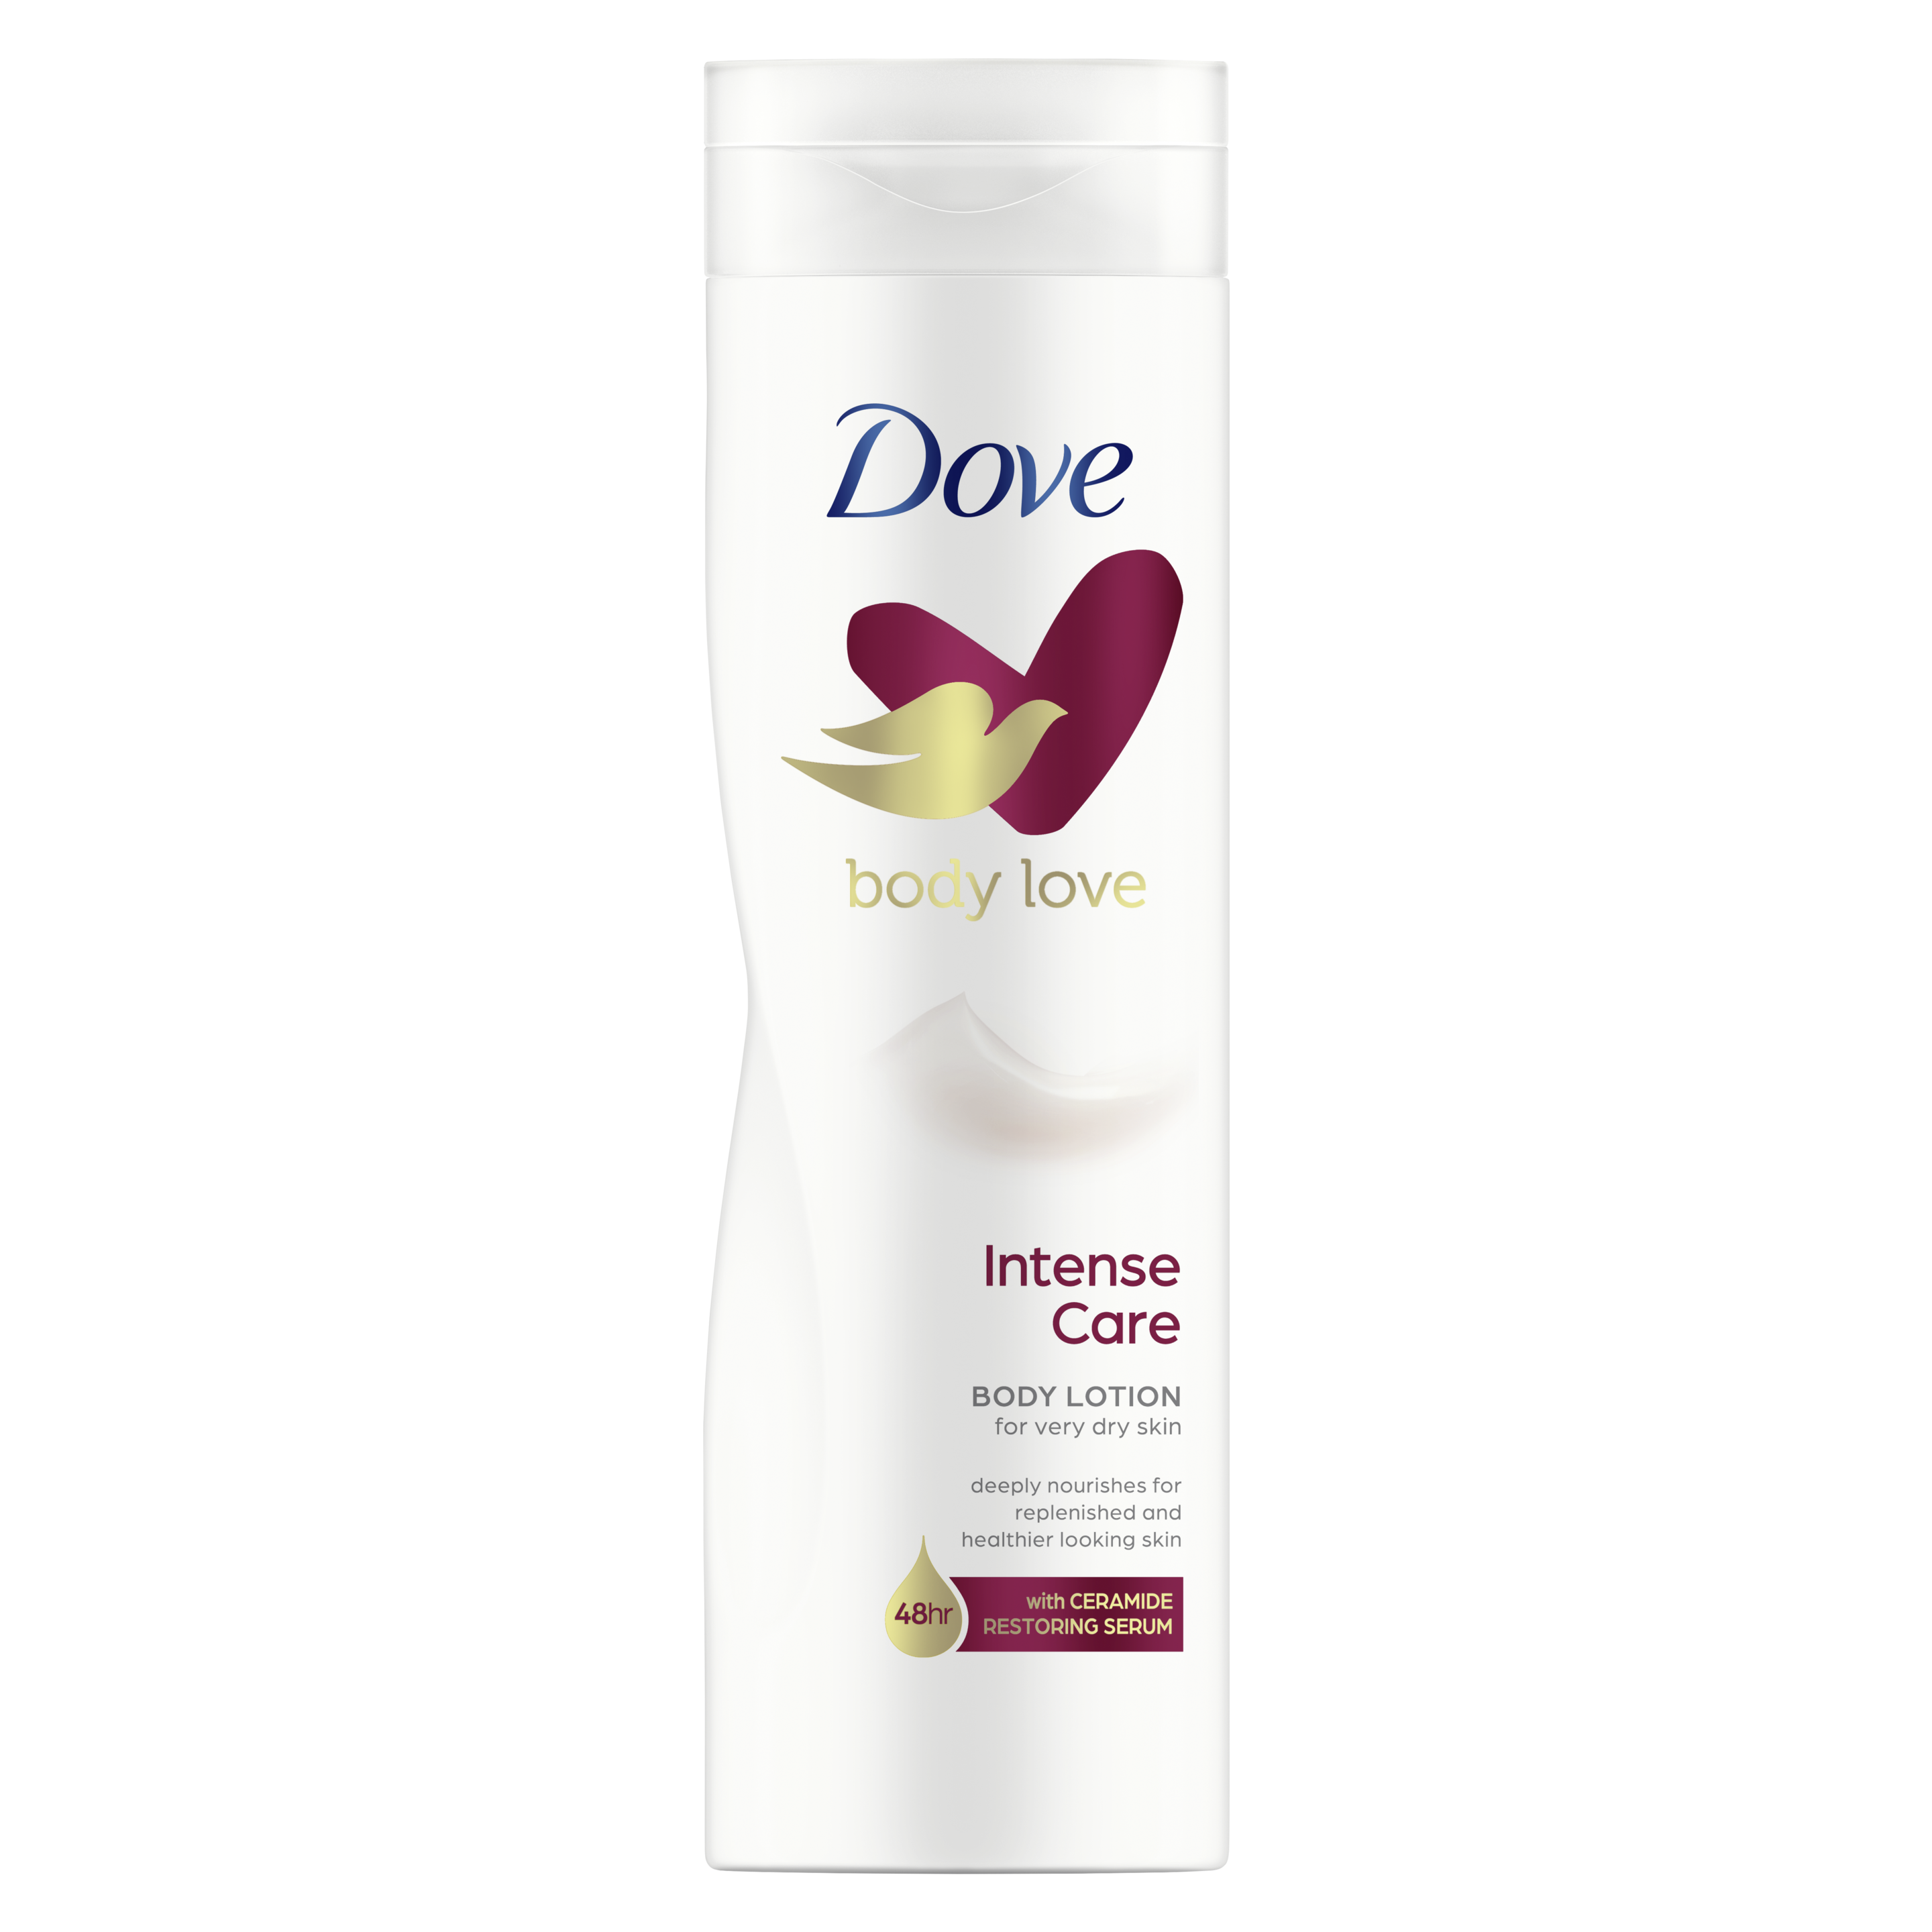 Dove Body Love Intensive Care Body Lotion 250ml